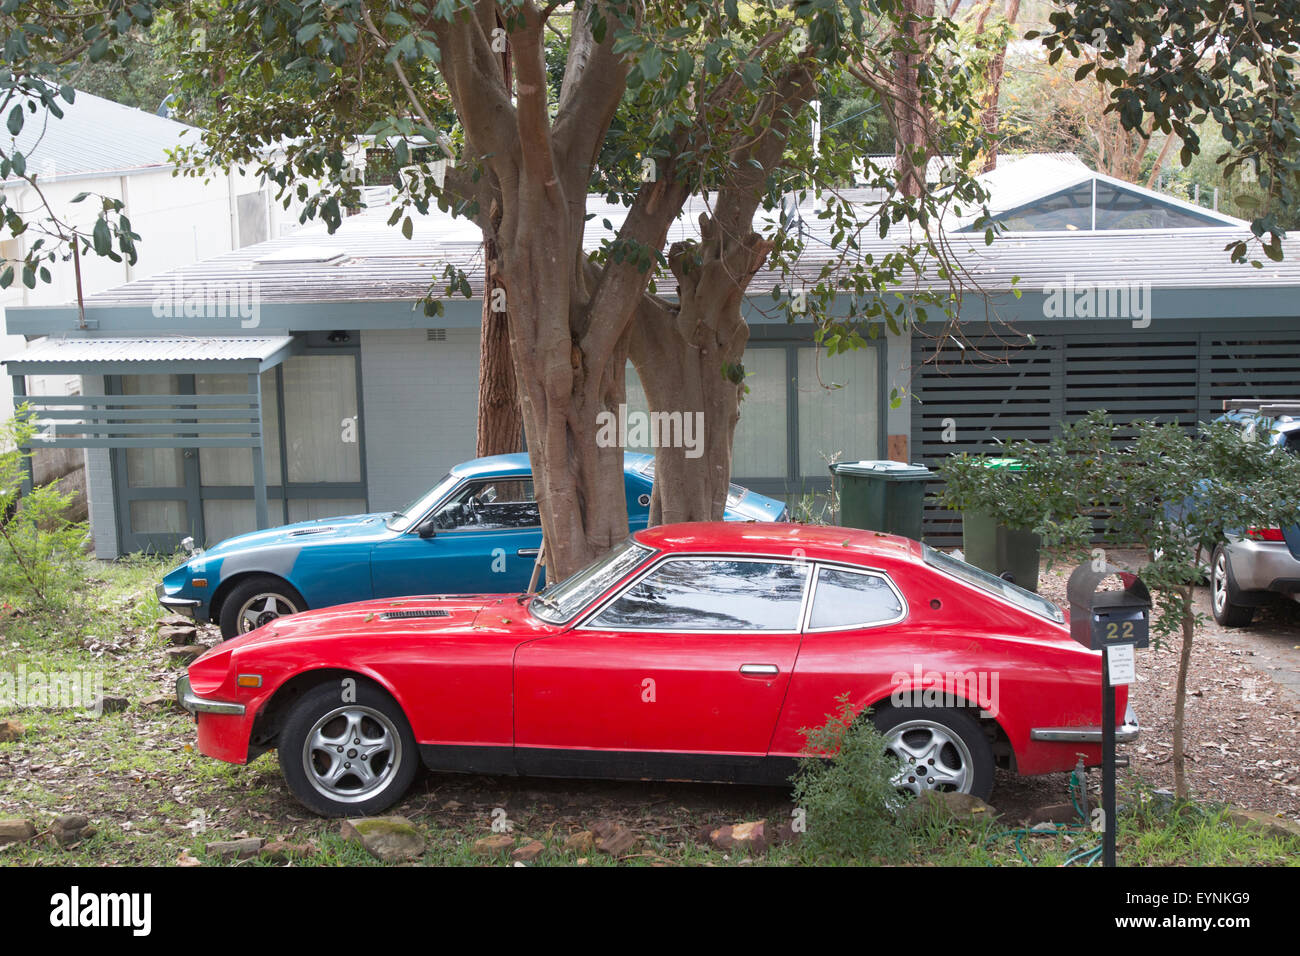 Two vintage Datsun 240z cars in Sydney,Australia Stock Photo